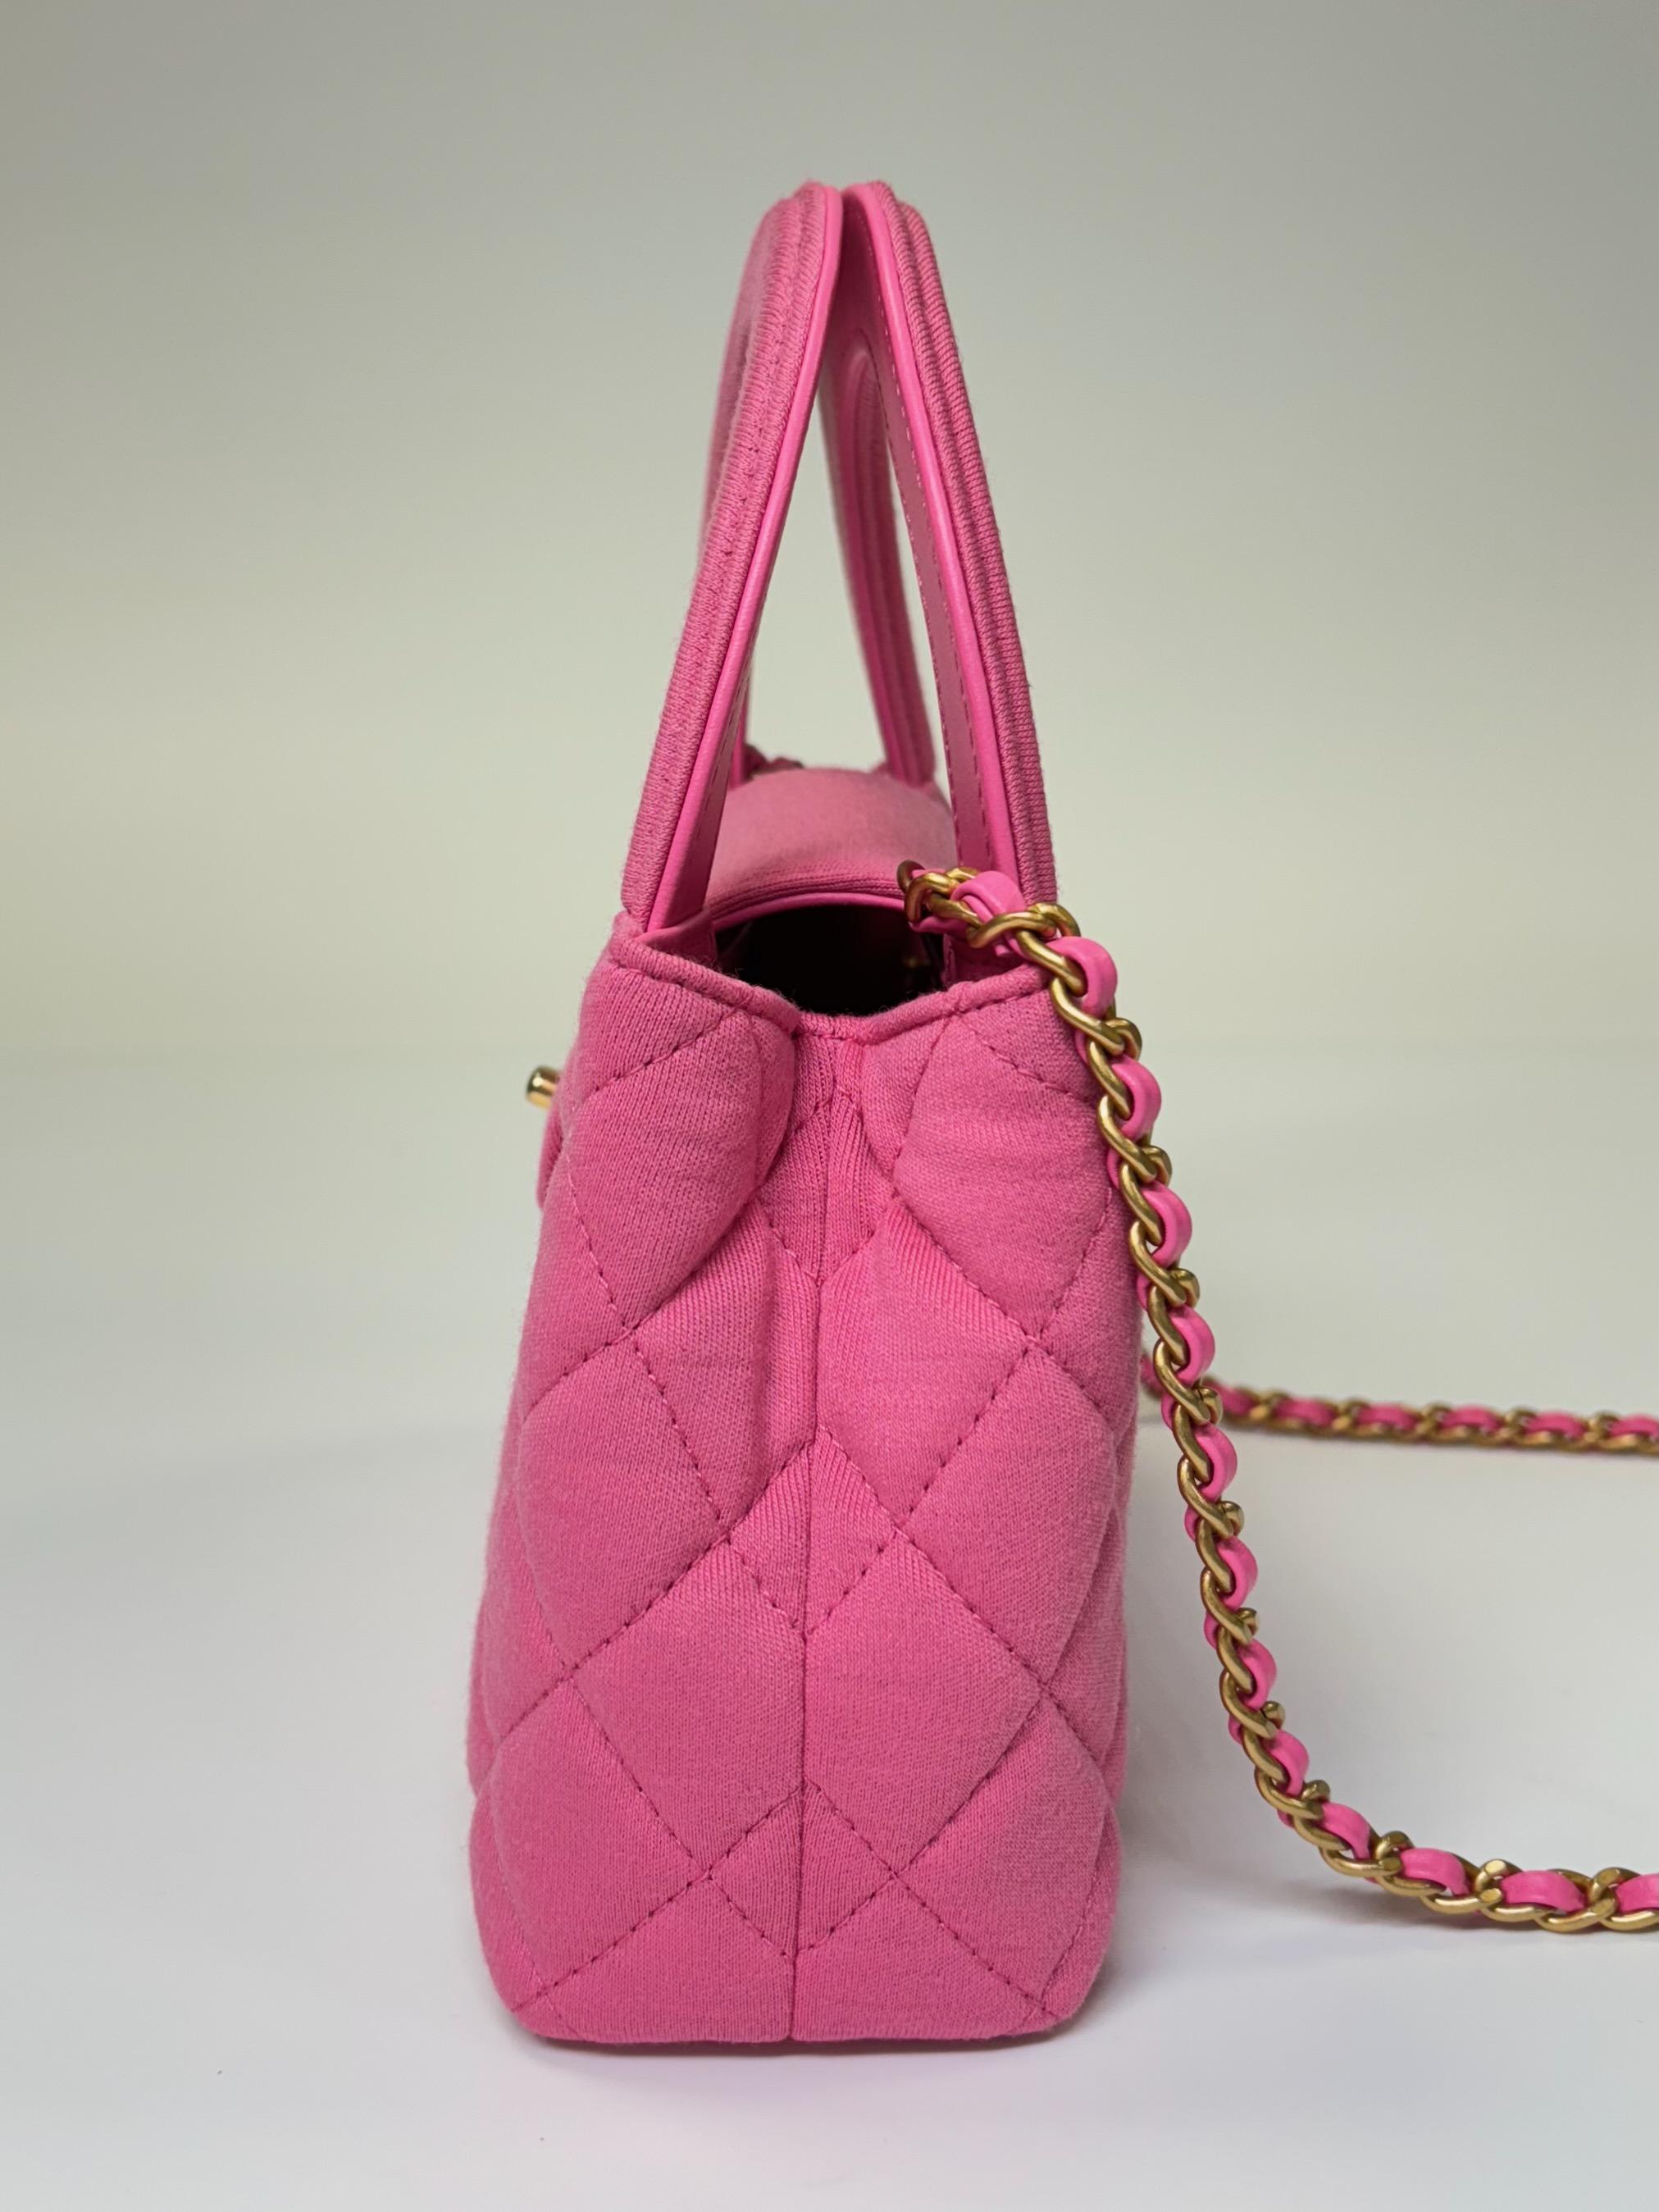 Chanel sac Kelly Shopper rose foncé matelassé avec détails dorés Pour femmes en vente